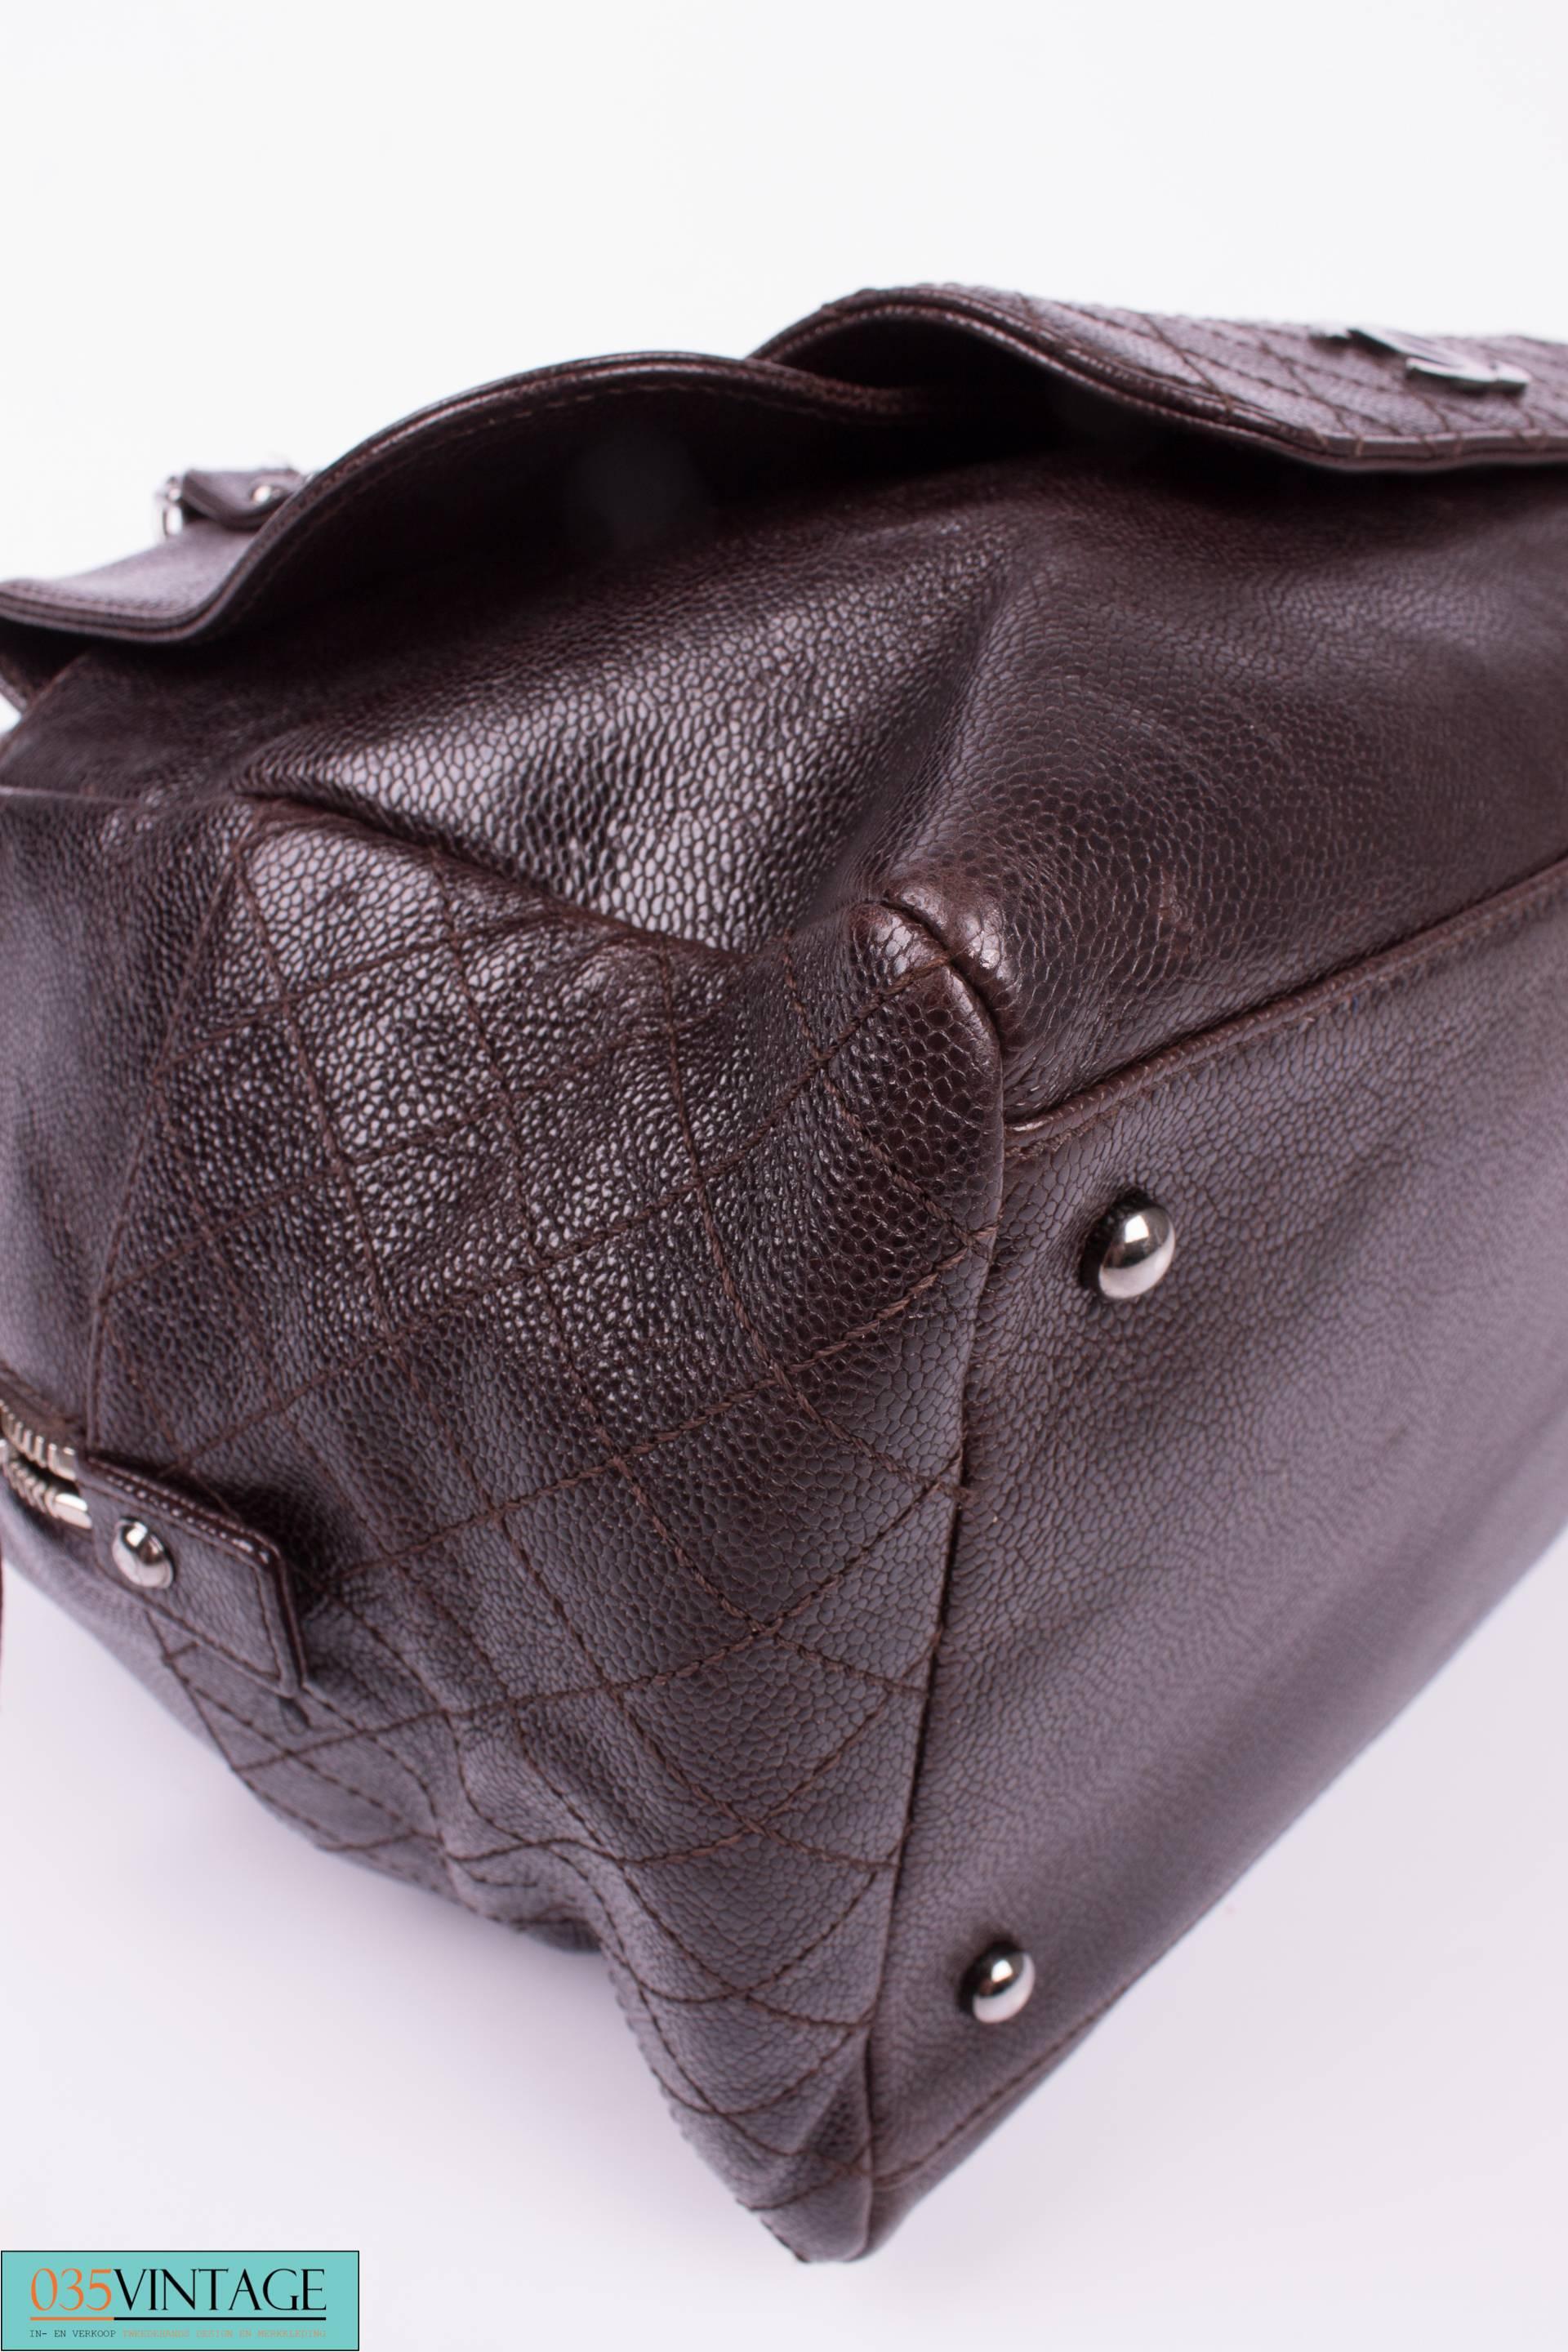 Men's Chanel Top Zip Bag Caviar Leather - dark brown 